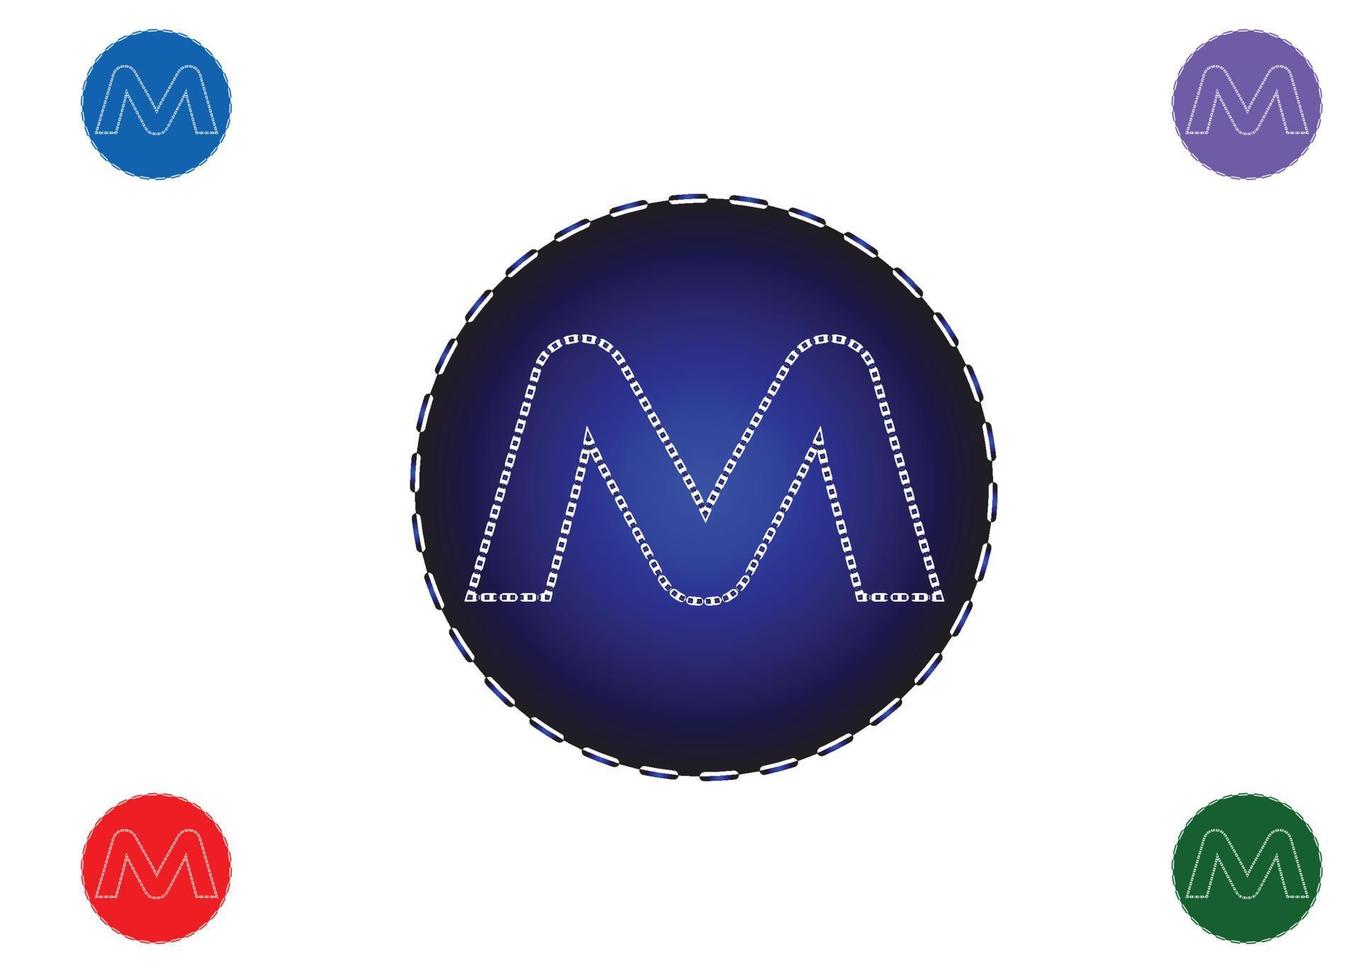 Plantilla de diseño de logotipo e icono de letra m vector